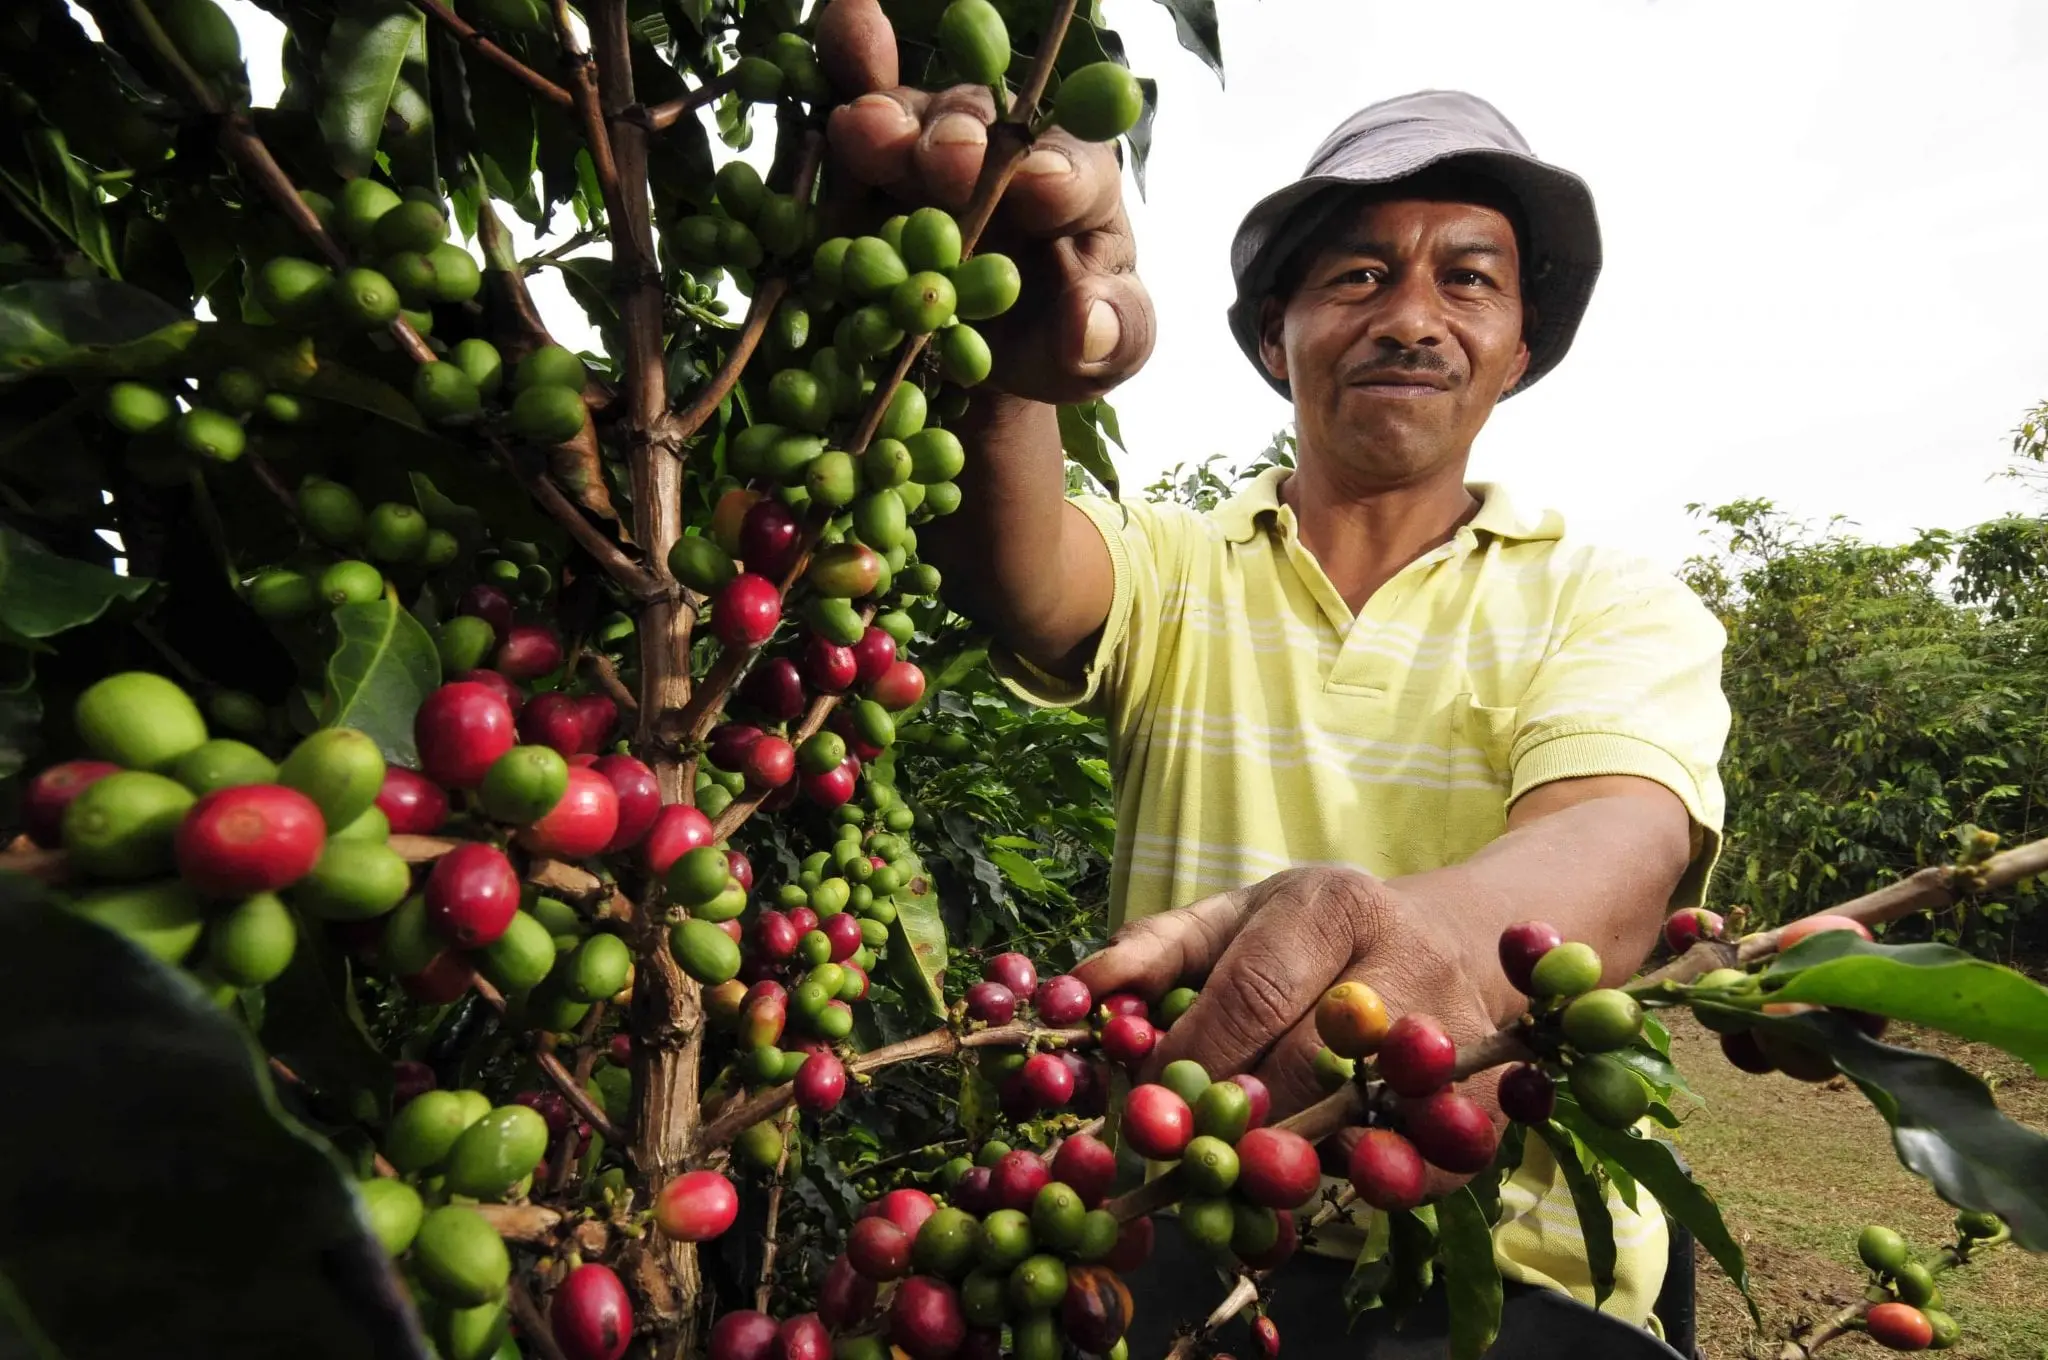 como se cultiva el cafe - Cómo es el proceso de cultivo y cosecha del café